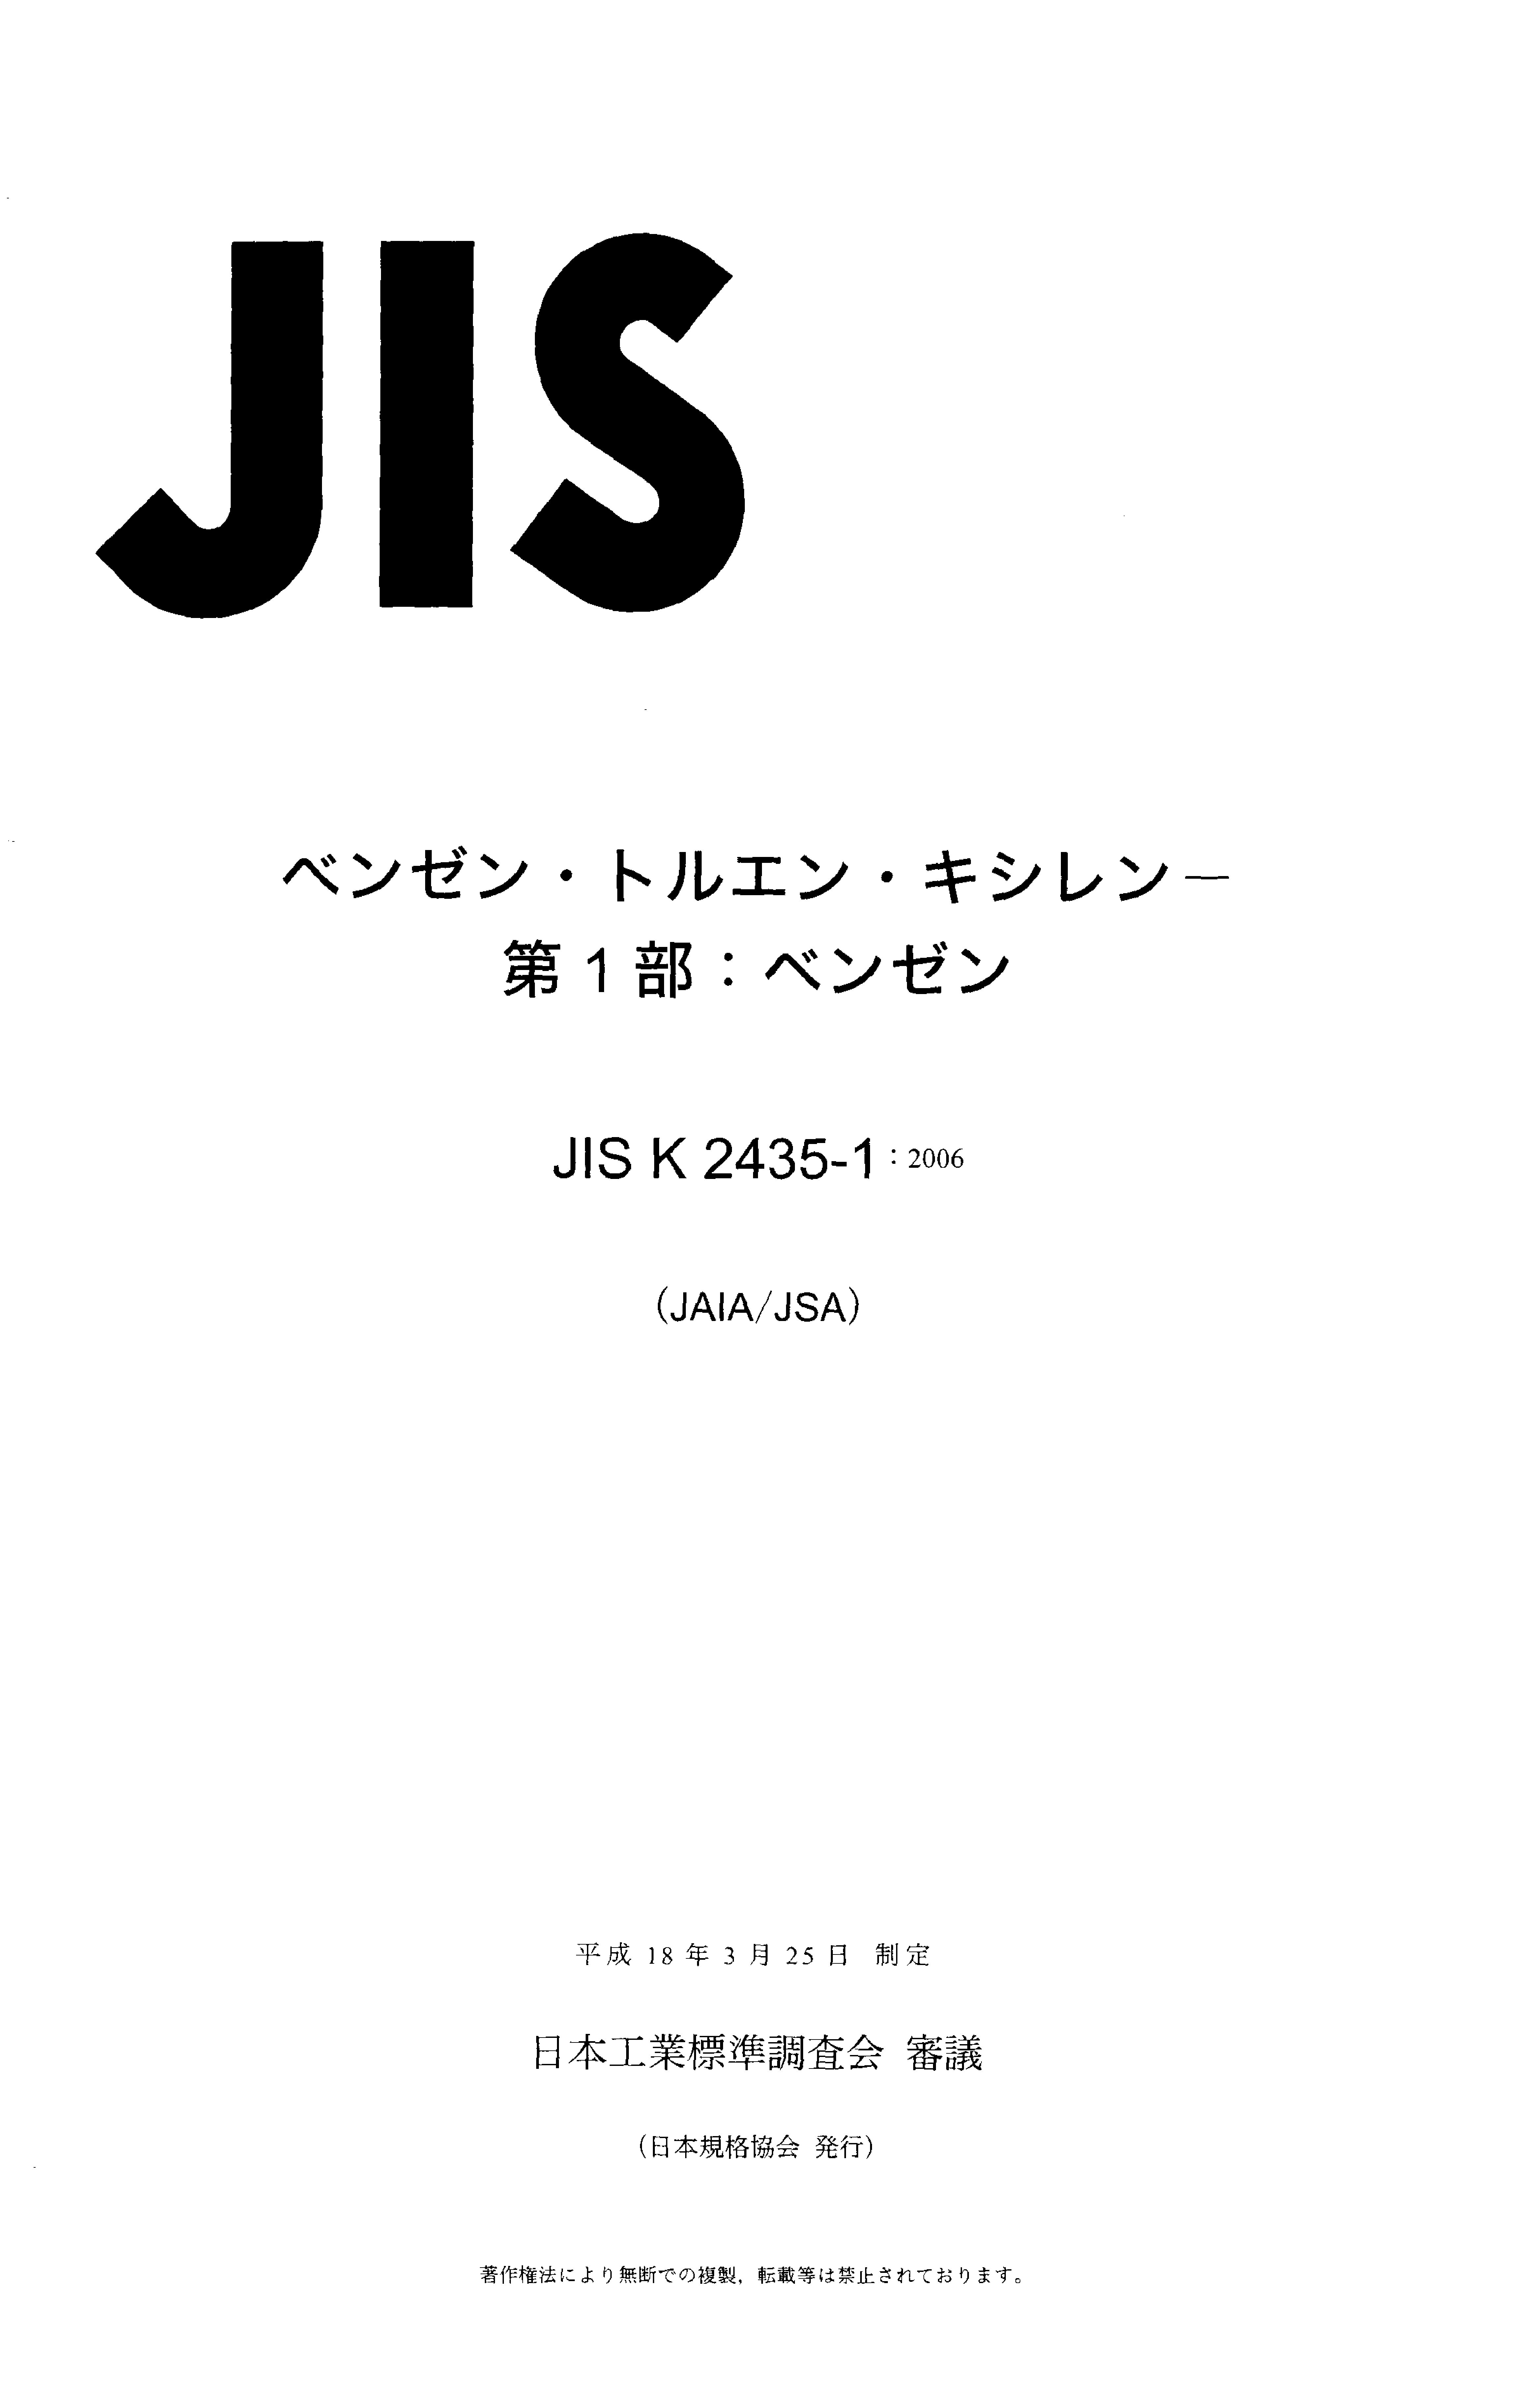 JIS K 2435-1:2006